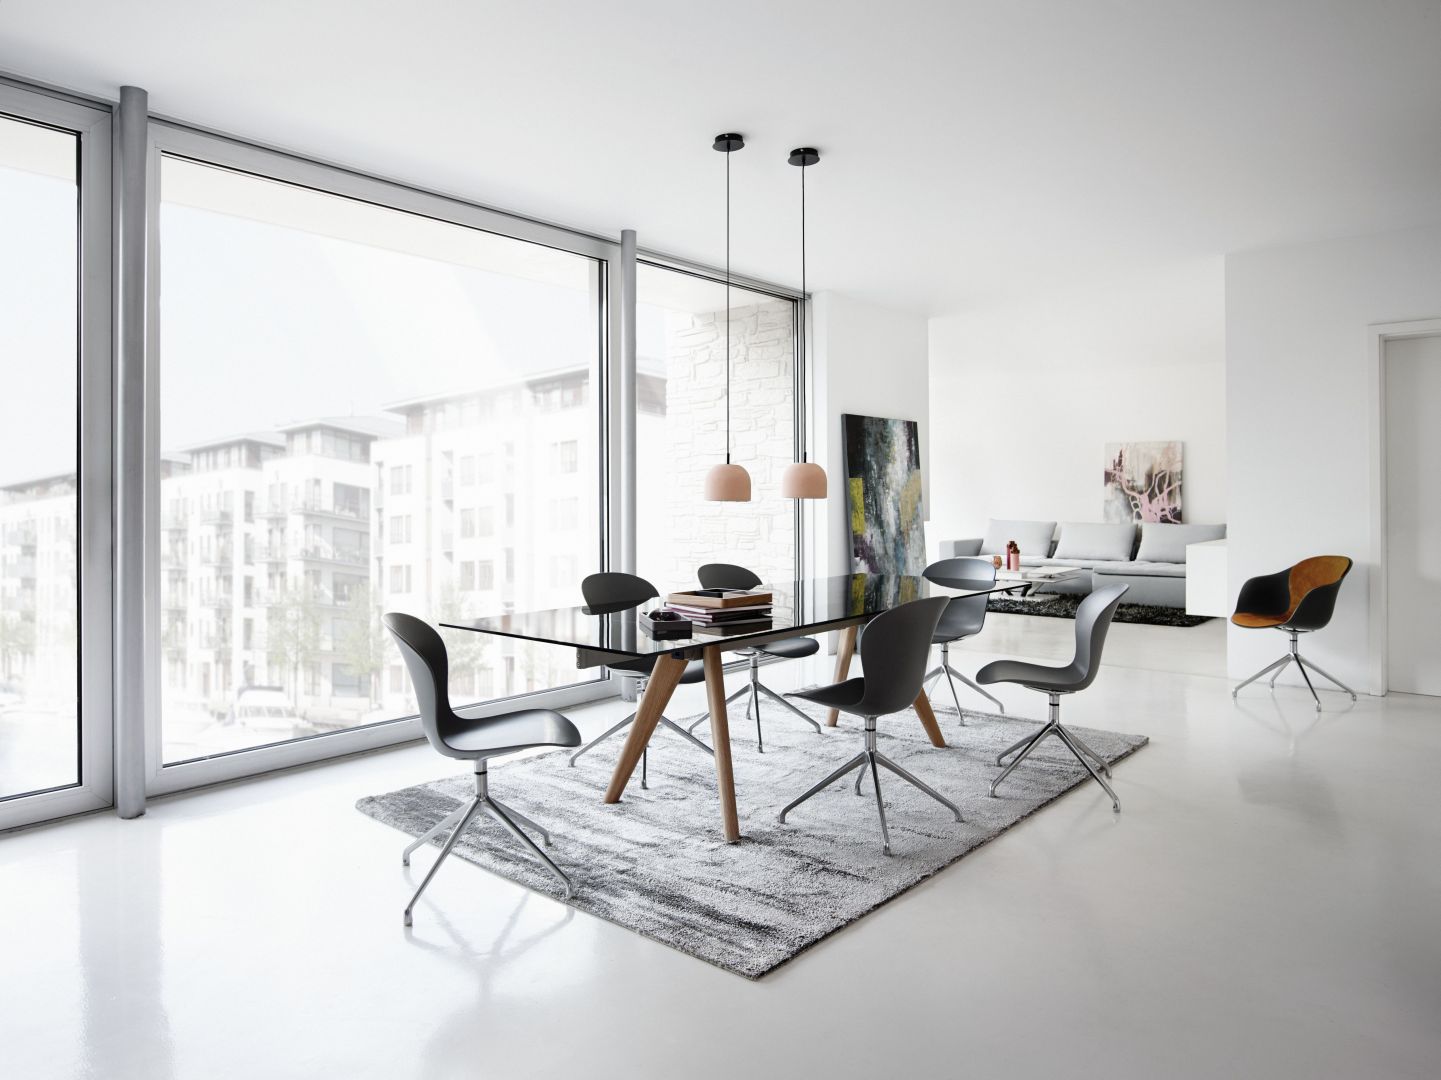 Stół Monza ze szklanym blatem oraz krzesła Adelaide marki BoConcept to nowoczesne połączenie materiałów delikatnych z mocnymi. Jak widać przeciwieństwa doskonale ze sobą wzpółgrają. Fot. BoConcept